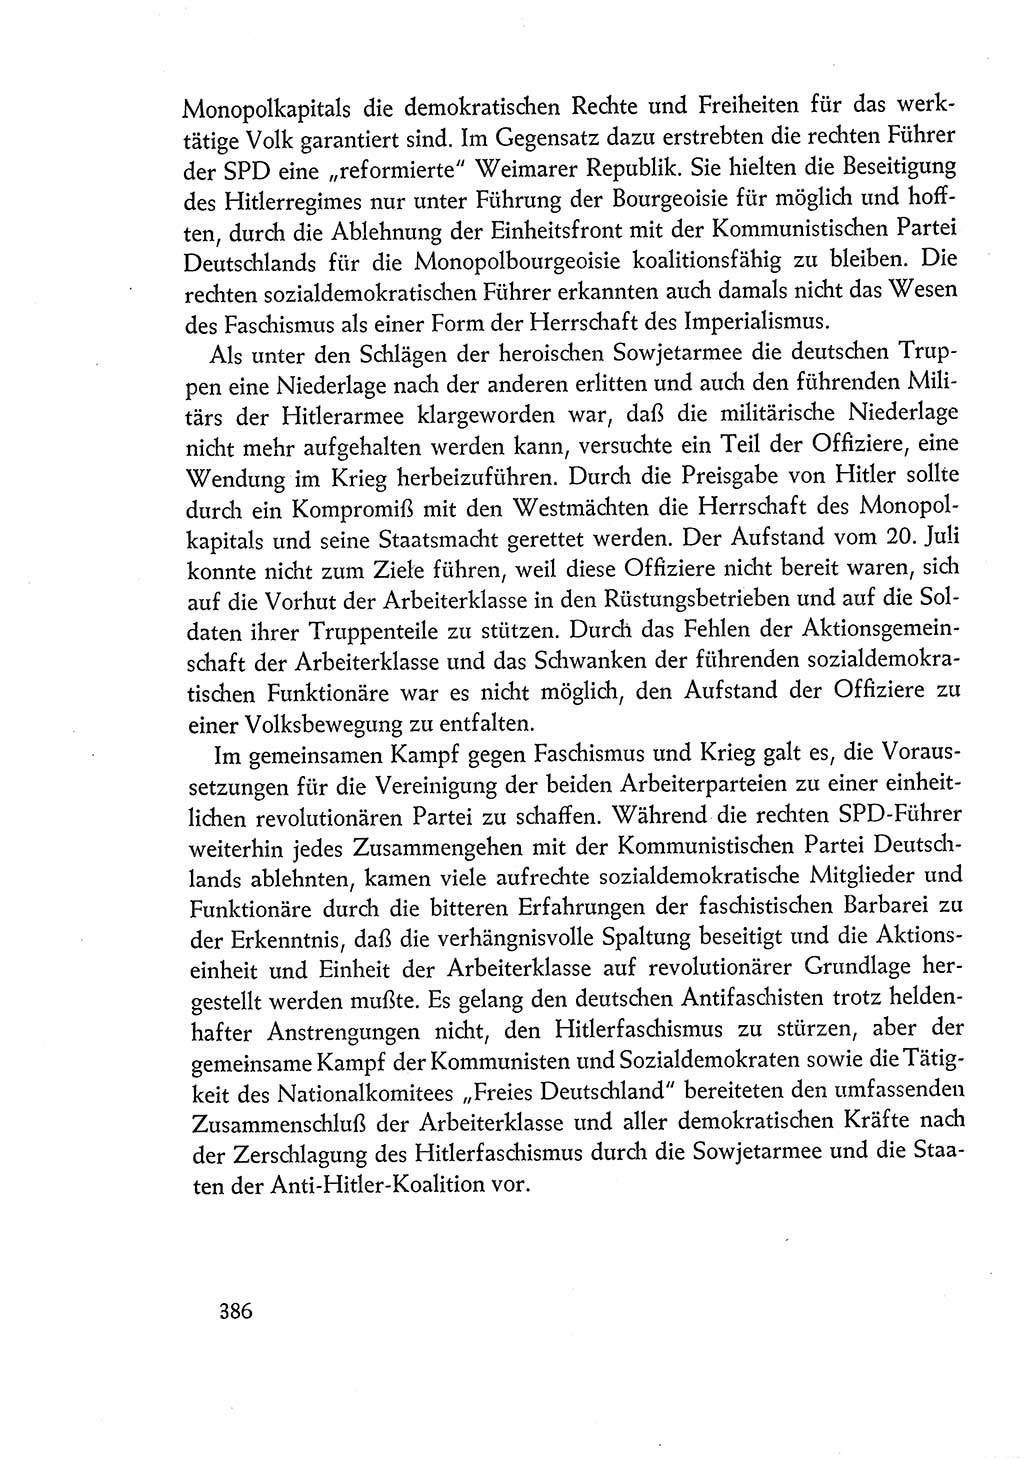 Dokumente der Sozialistischen Einheitspartei Deutschlands (SED) [Deutsche Demokratische Republik (DDR)] 1960-1961, Seite 386 (Dok. SED DDR 1960-1961, S. 386)